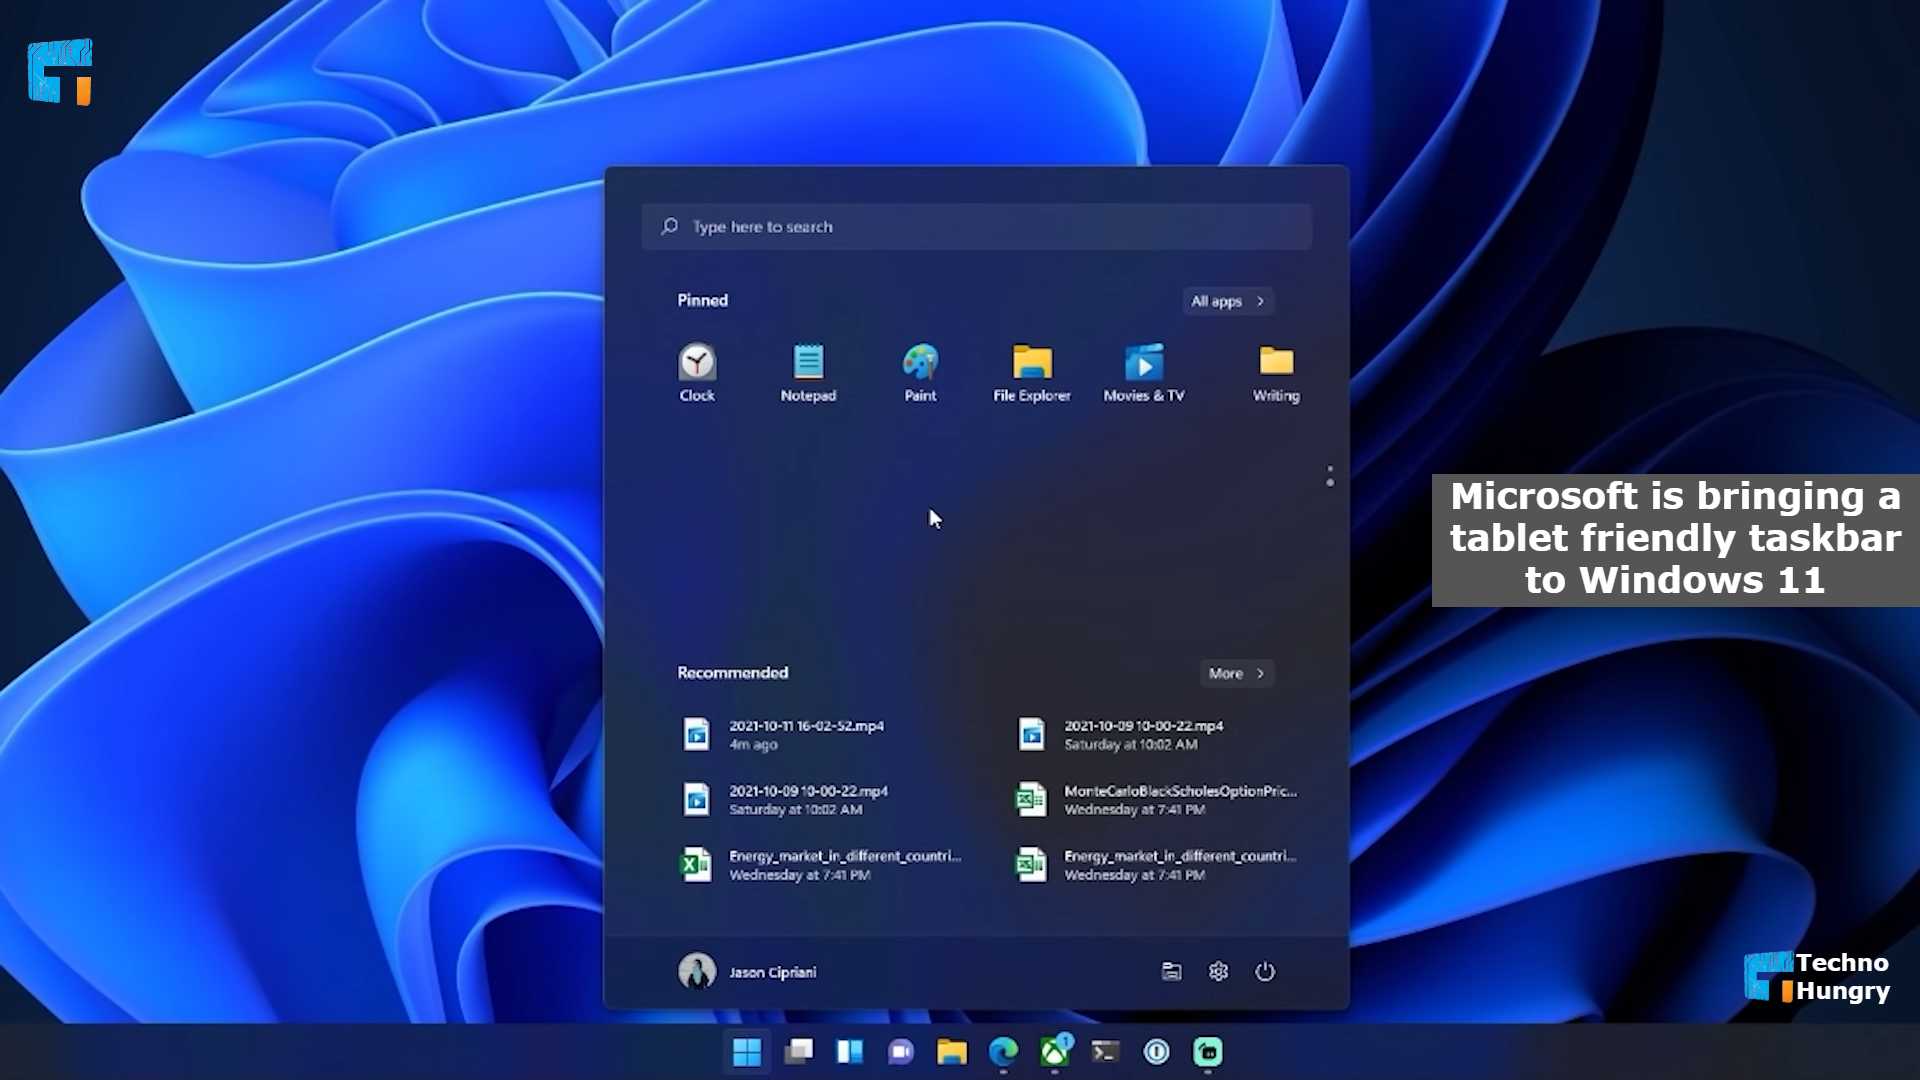 Microsoft bringing a tablet friendly taskbar to Windows 11